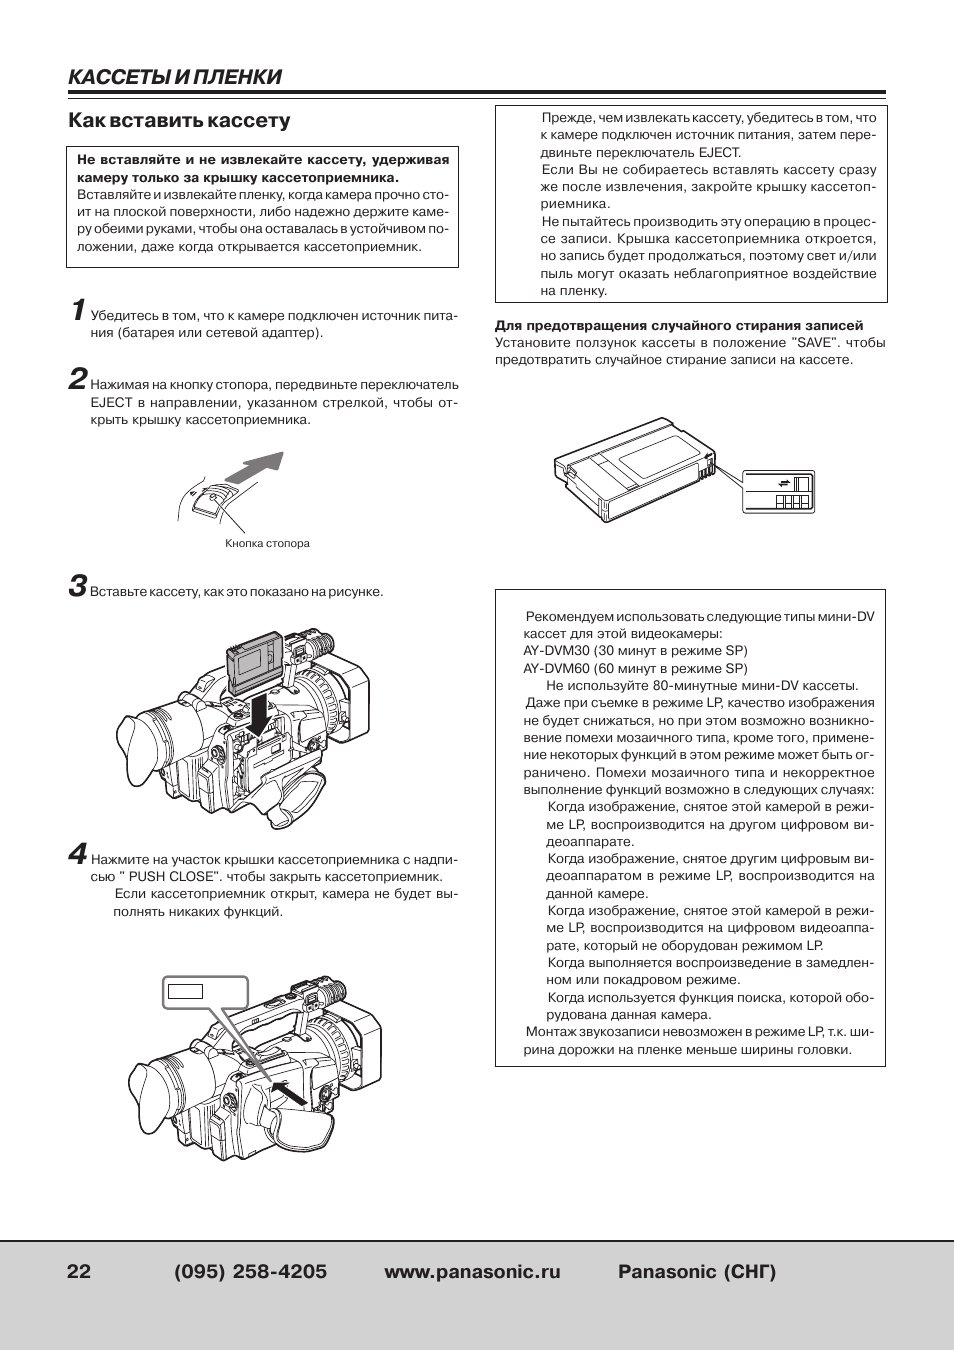 Инструкция по эксплуатации видеокамеры panasonic nv ds60